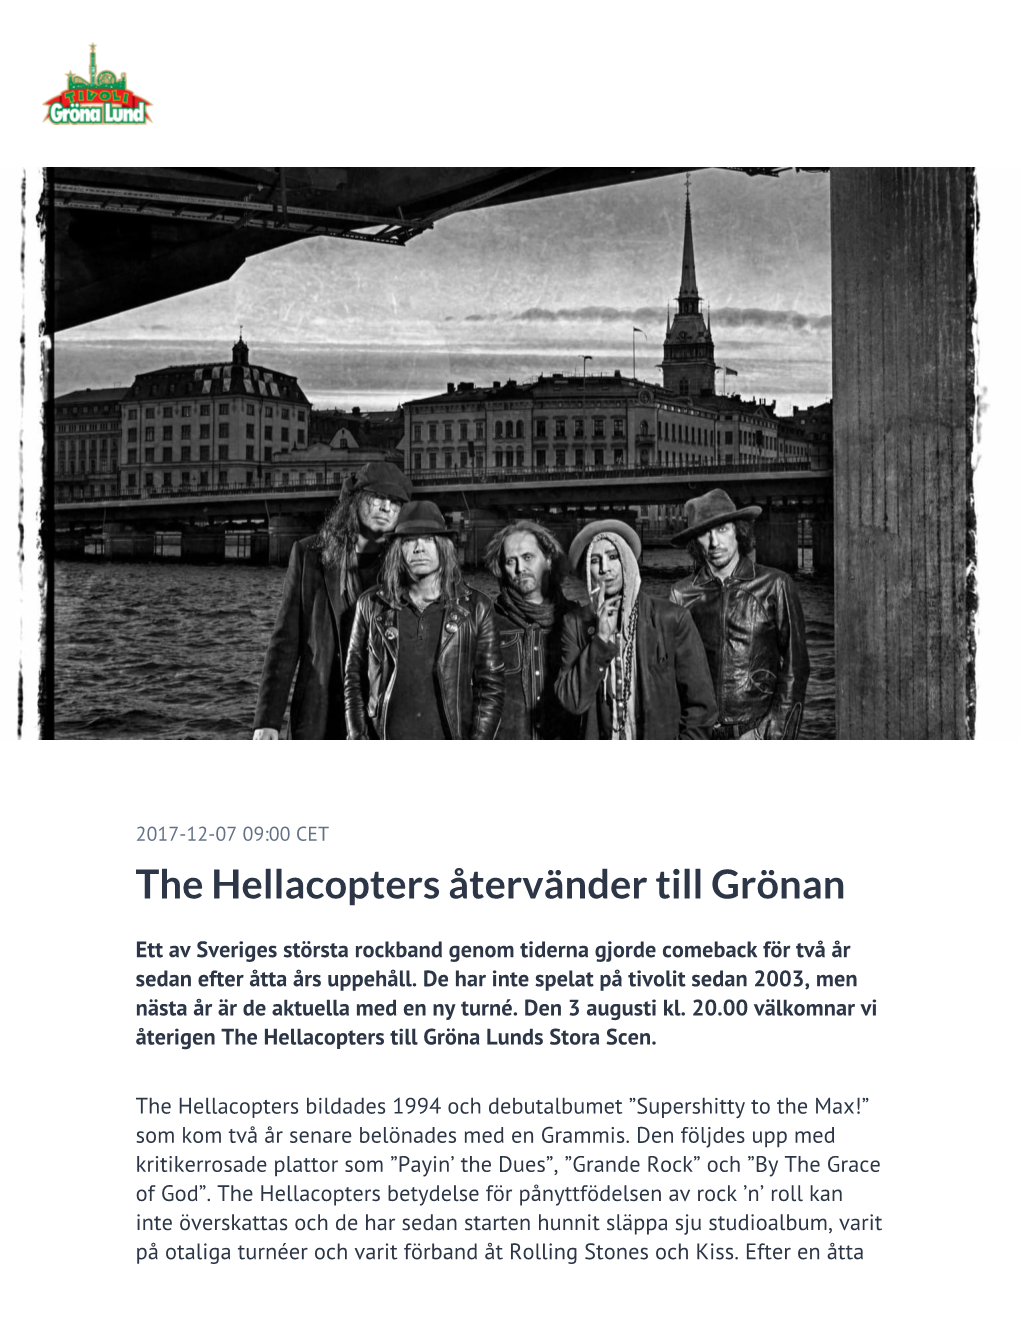 The Hellacopters Återvänder Till Grönan